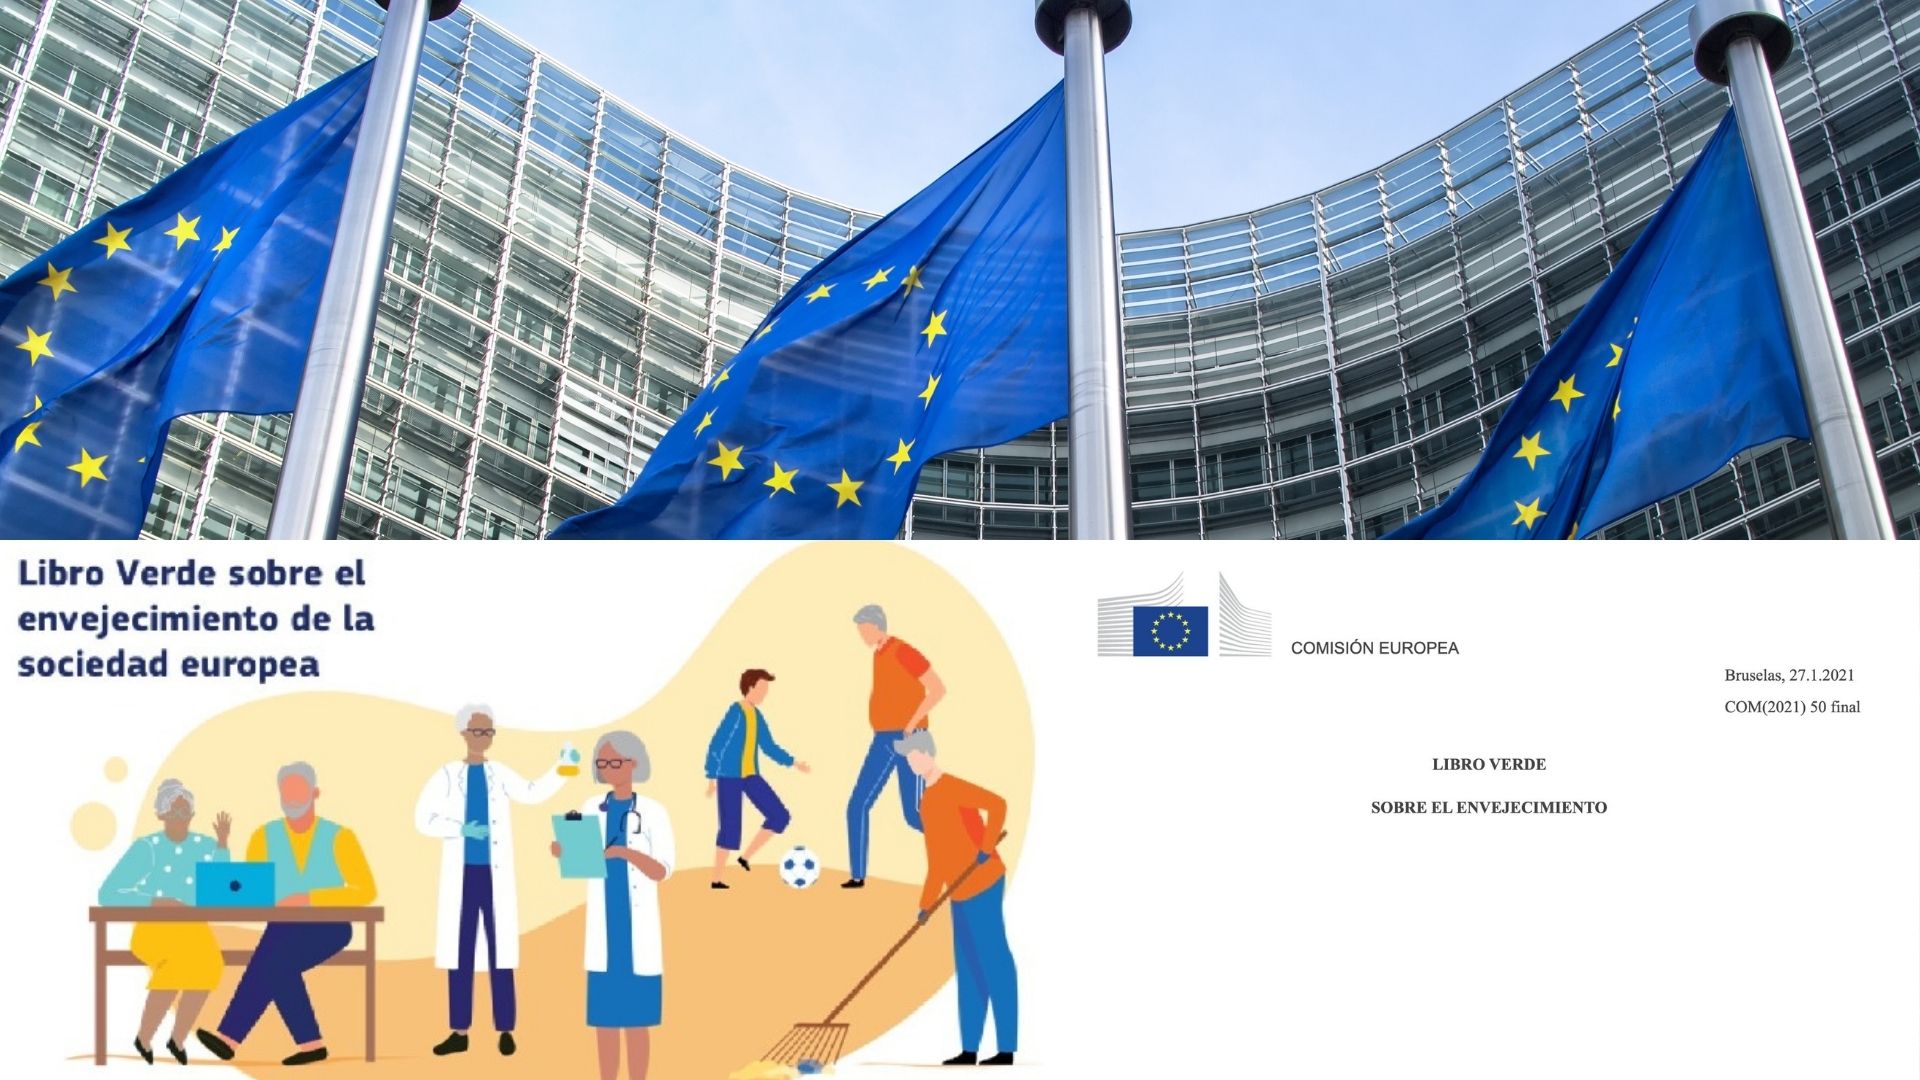 En imagen el edificio del Parlamento Europeo, junto a la bandera de la Unión Europea